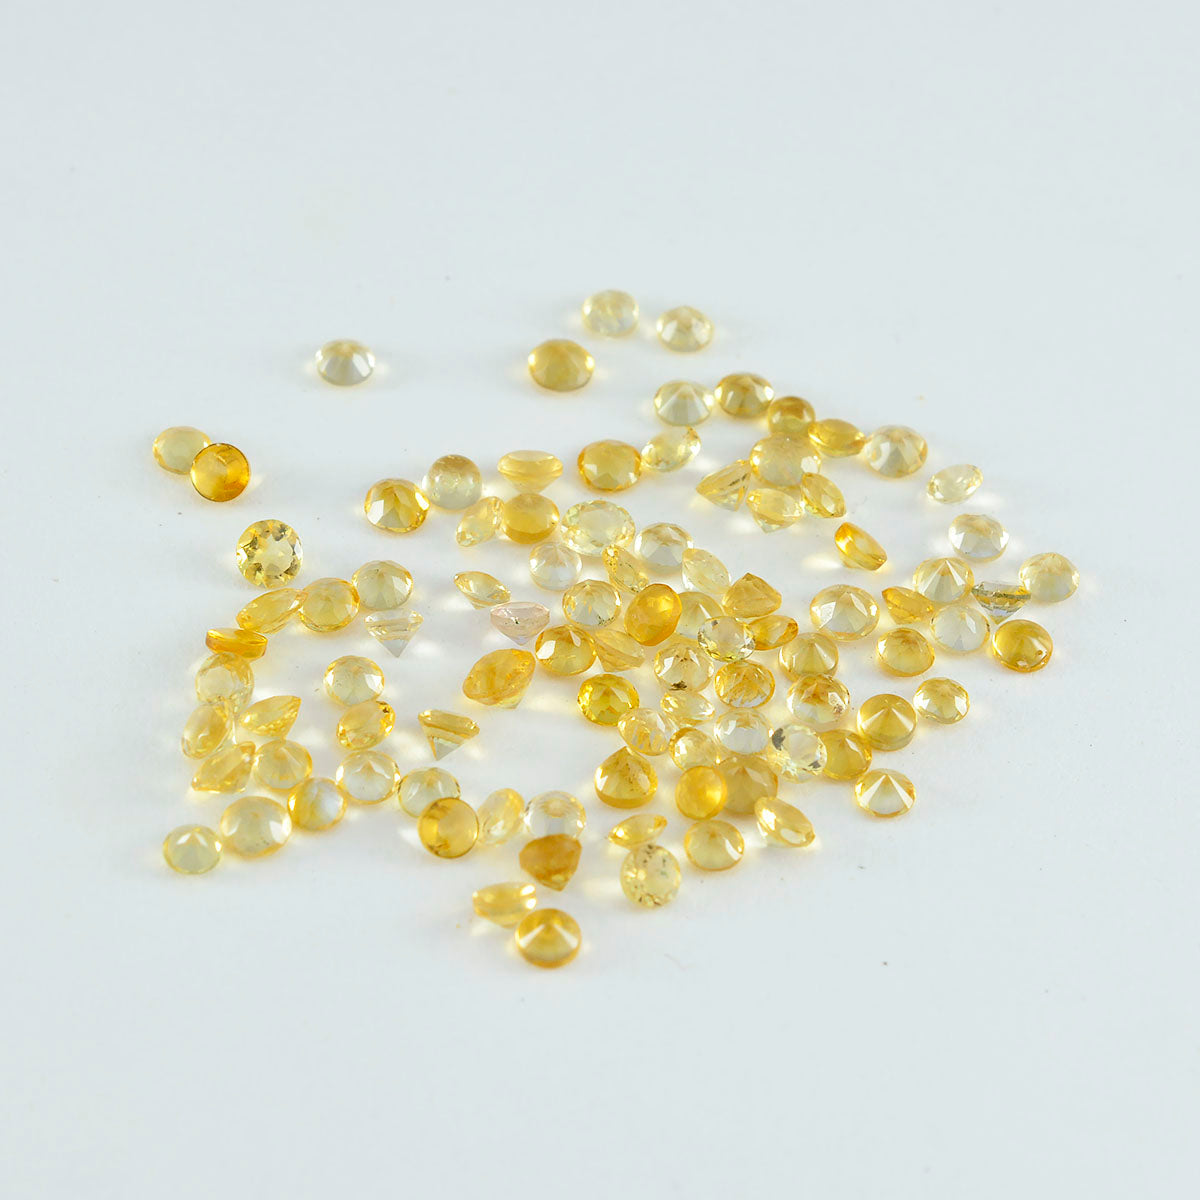 riyogems 1шт настоящий желтый цитрин ограненный 2x2 мм круглая форма превосходное качество россыпь драгоценных камней